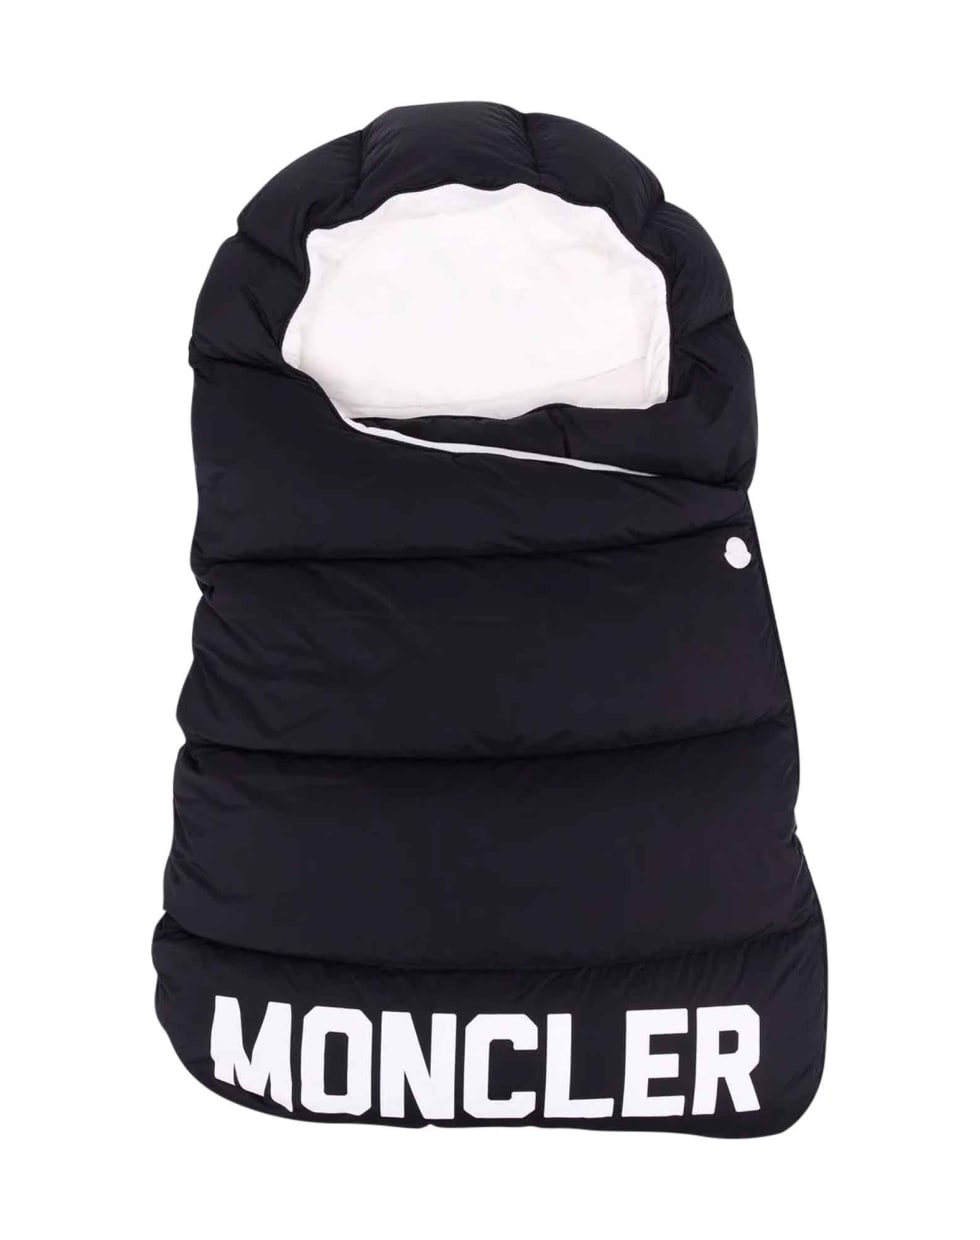 Moncler Black Sleeping Bag - Nero